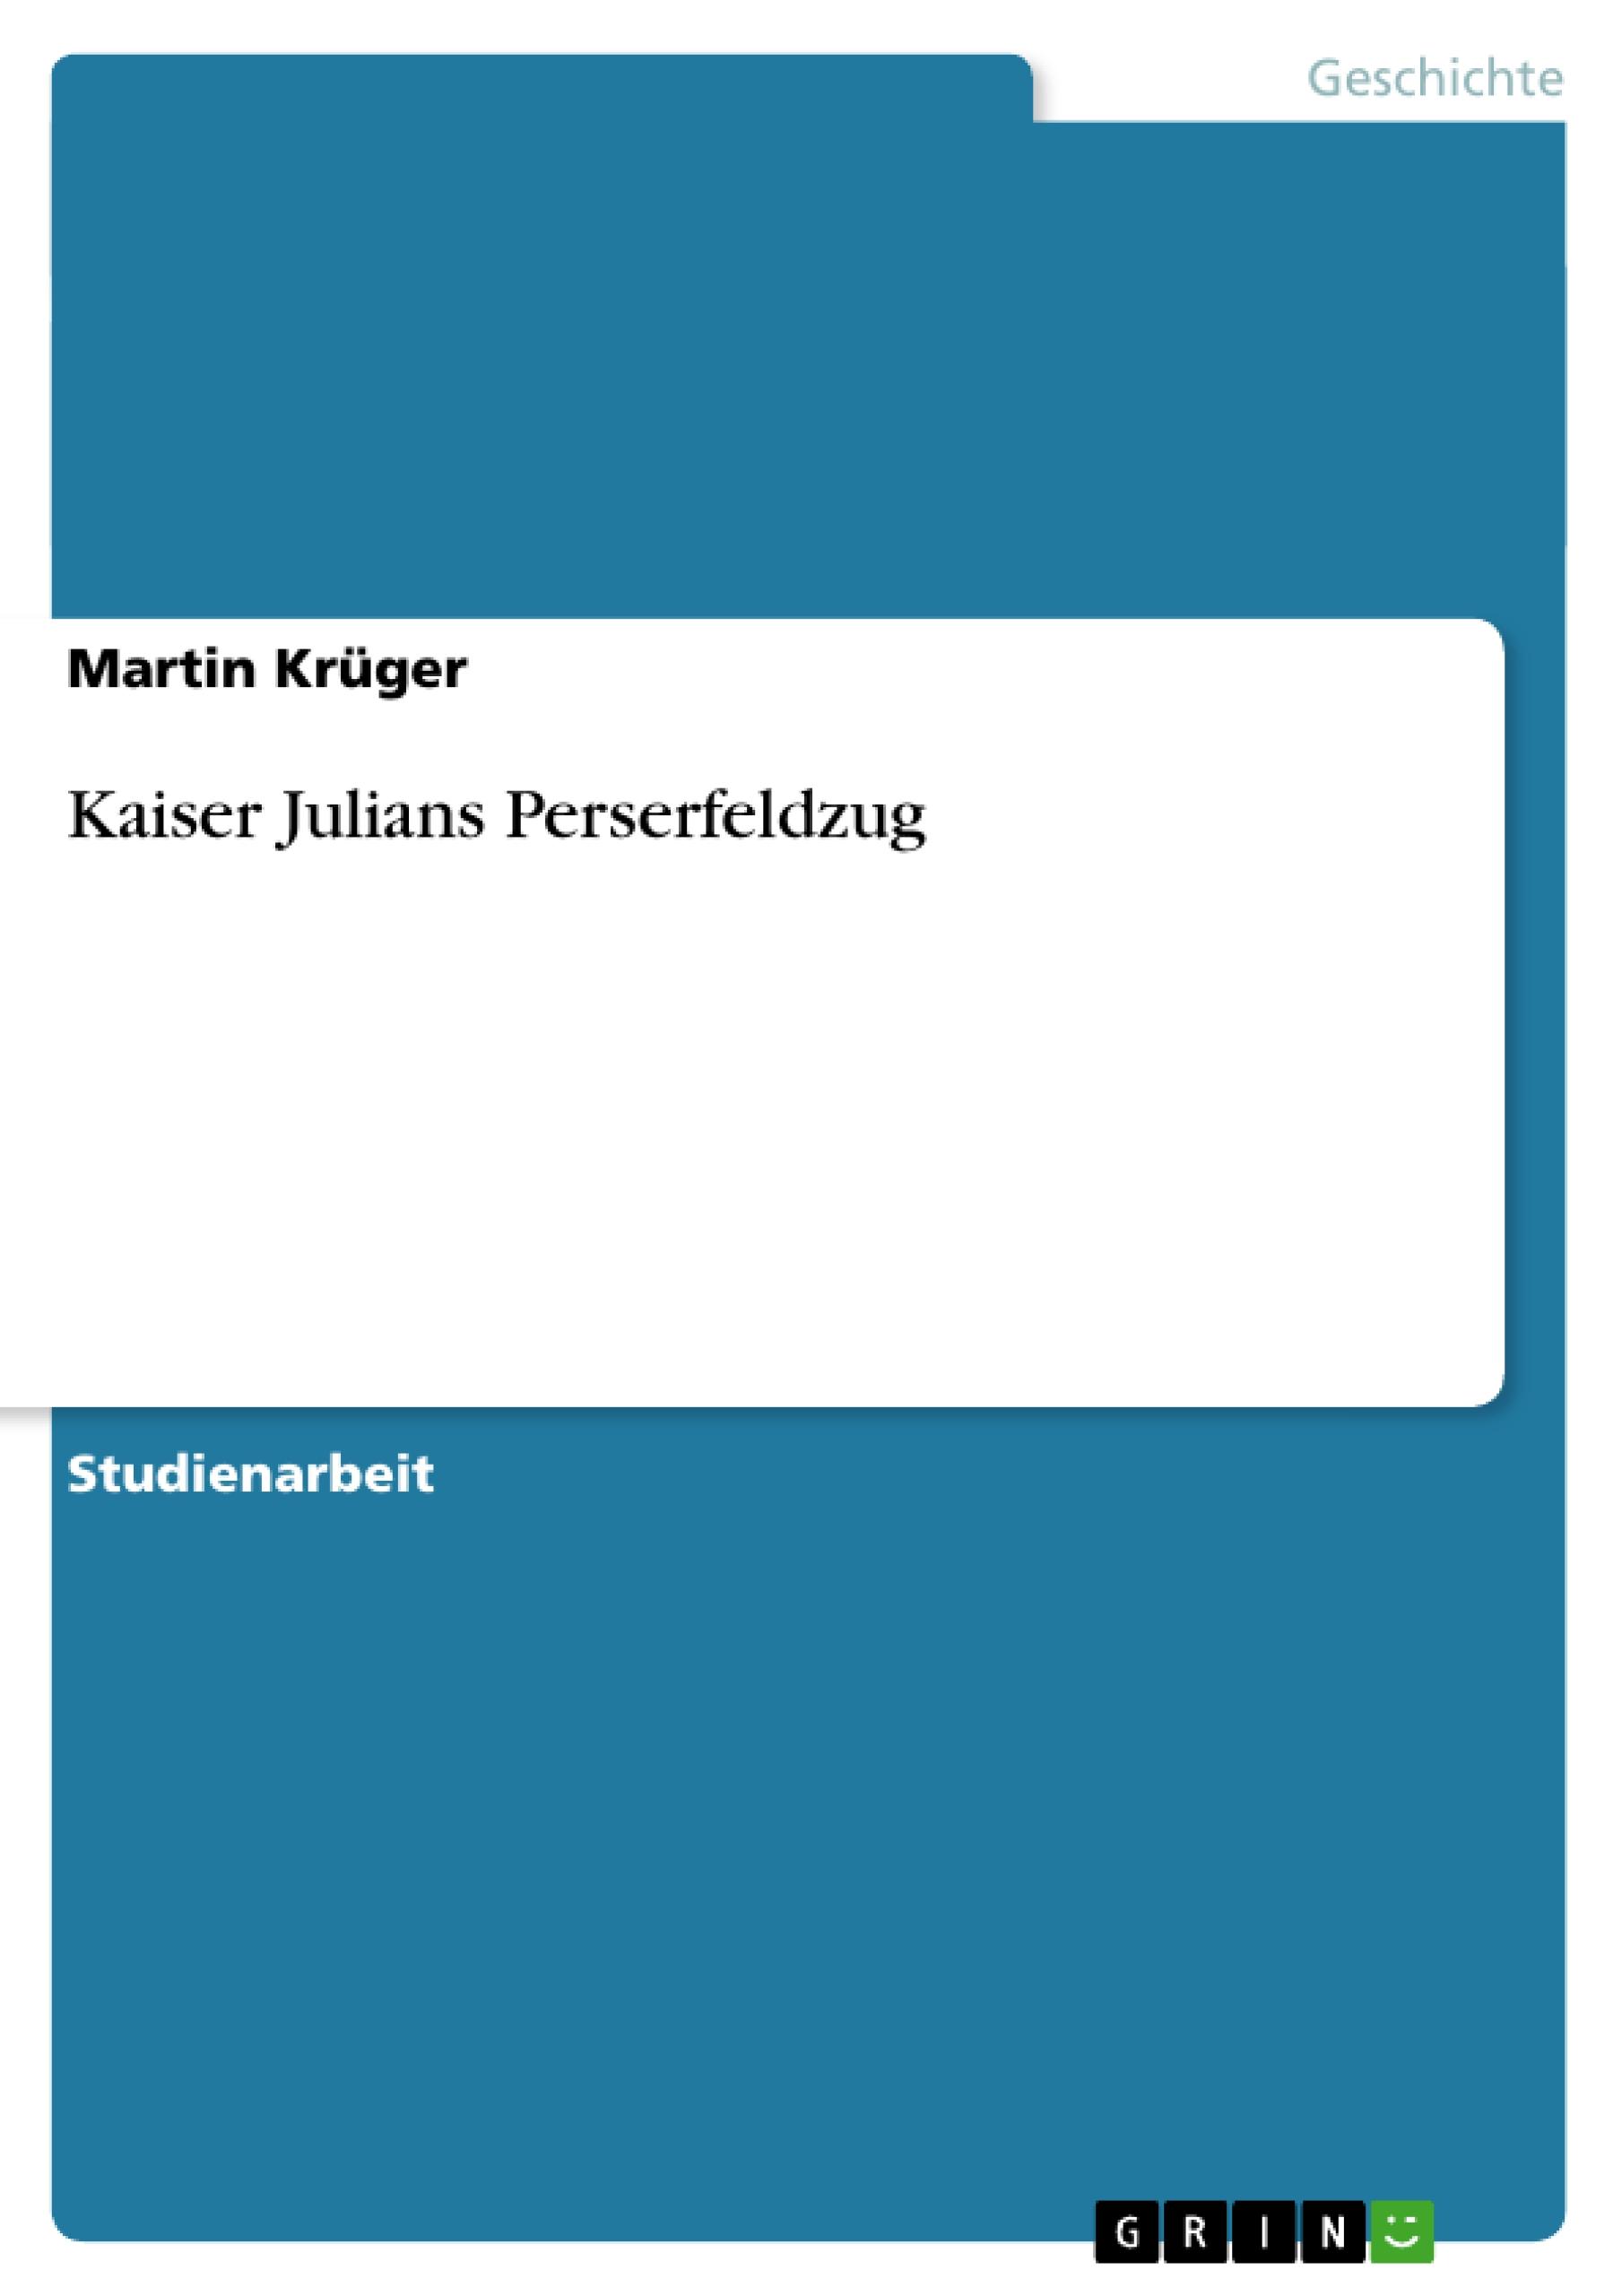 Kaiser Julians Perserfeldzug - Krueger, Martin